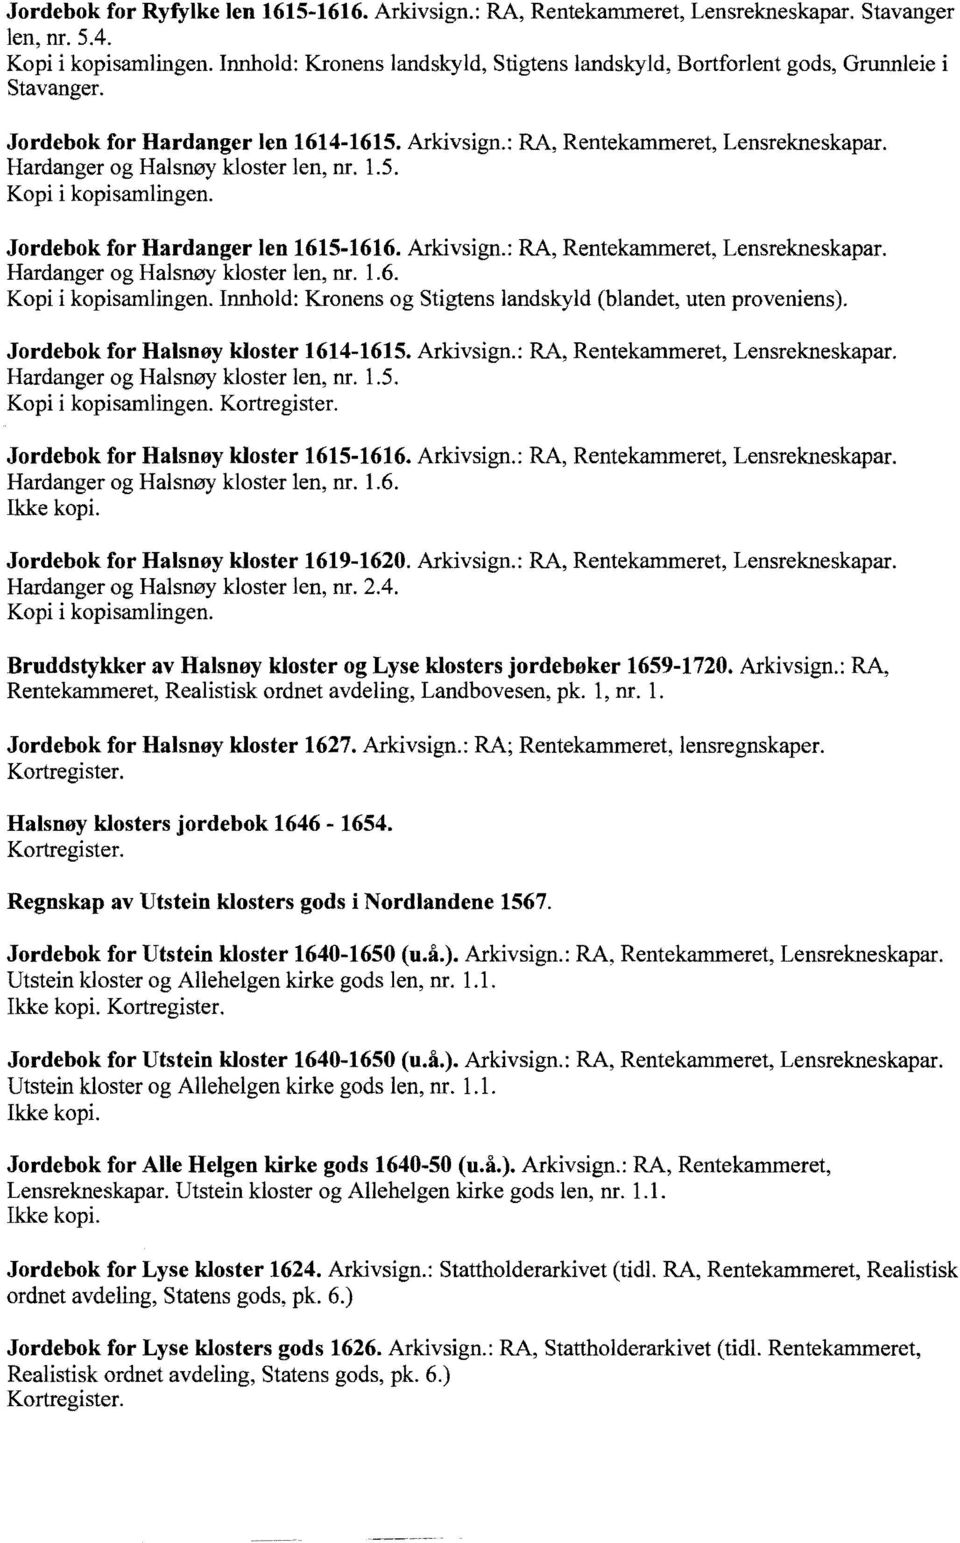 Hardanger og Halsnøy kloster len, nr. 1.6. Innhold: Kronens og Stigtens landskyld (blandet, uten proveniens). Jordebok for Halsnøy kloster 1614-1615. Arkivsign.: RA, Rentekammeret, Lensrekneskapar.